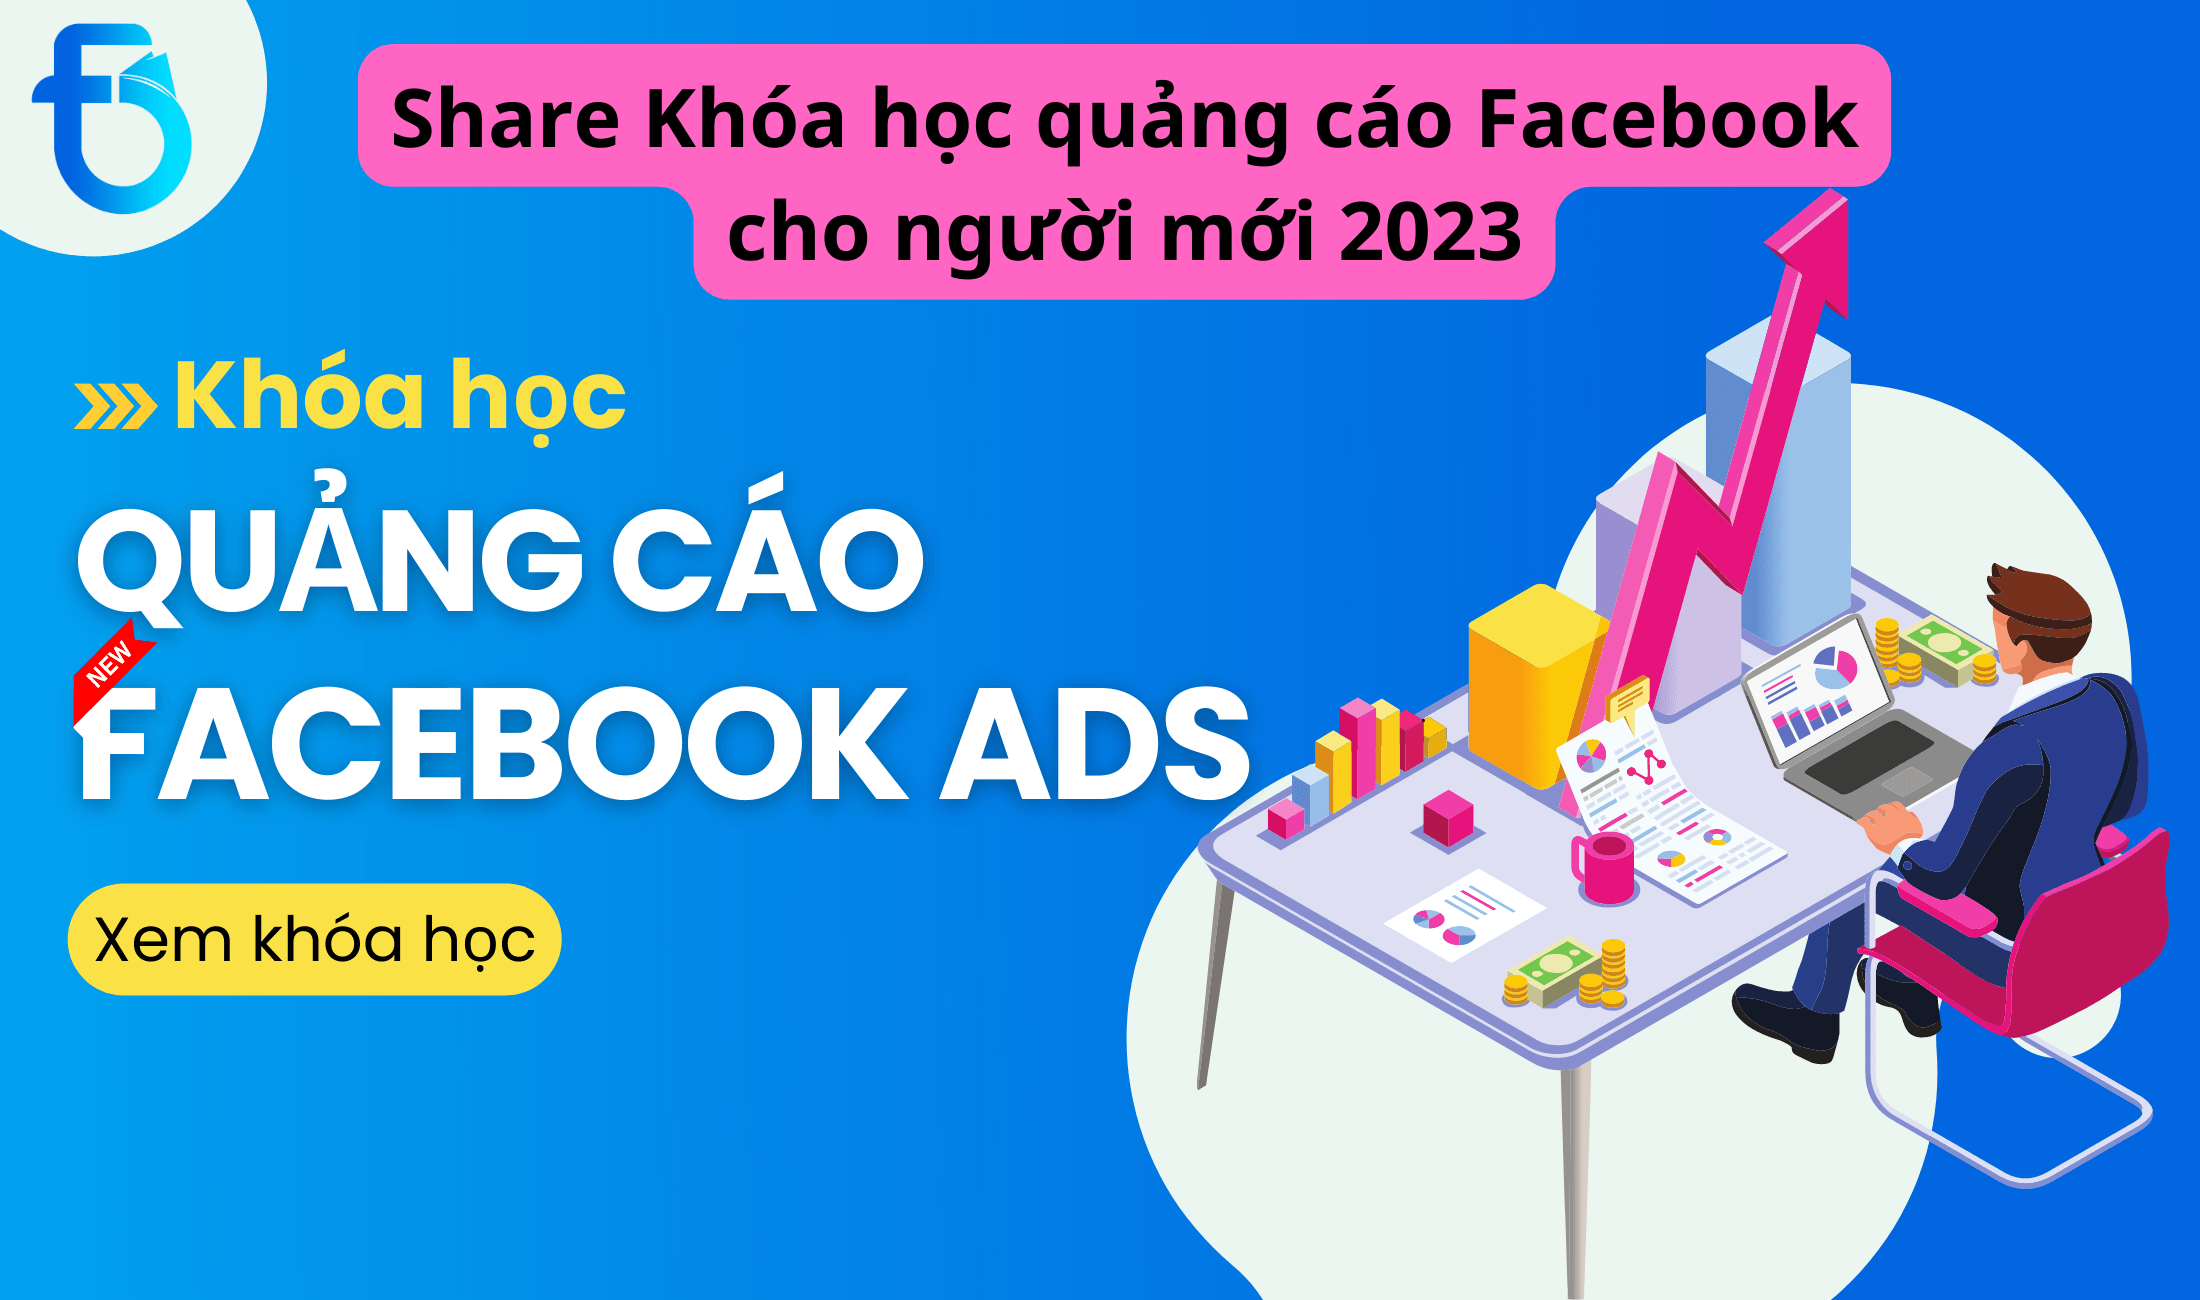 share khóa học quảng cáo facebook cho người mới 2023